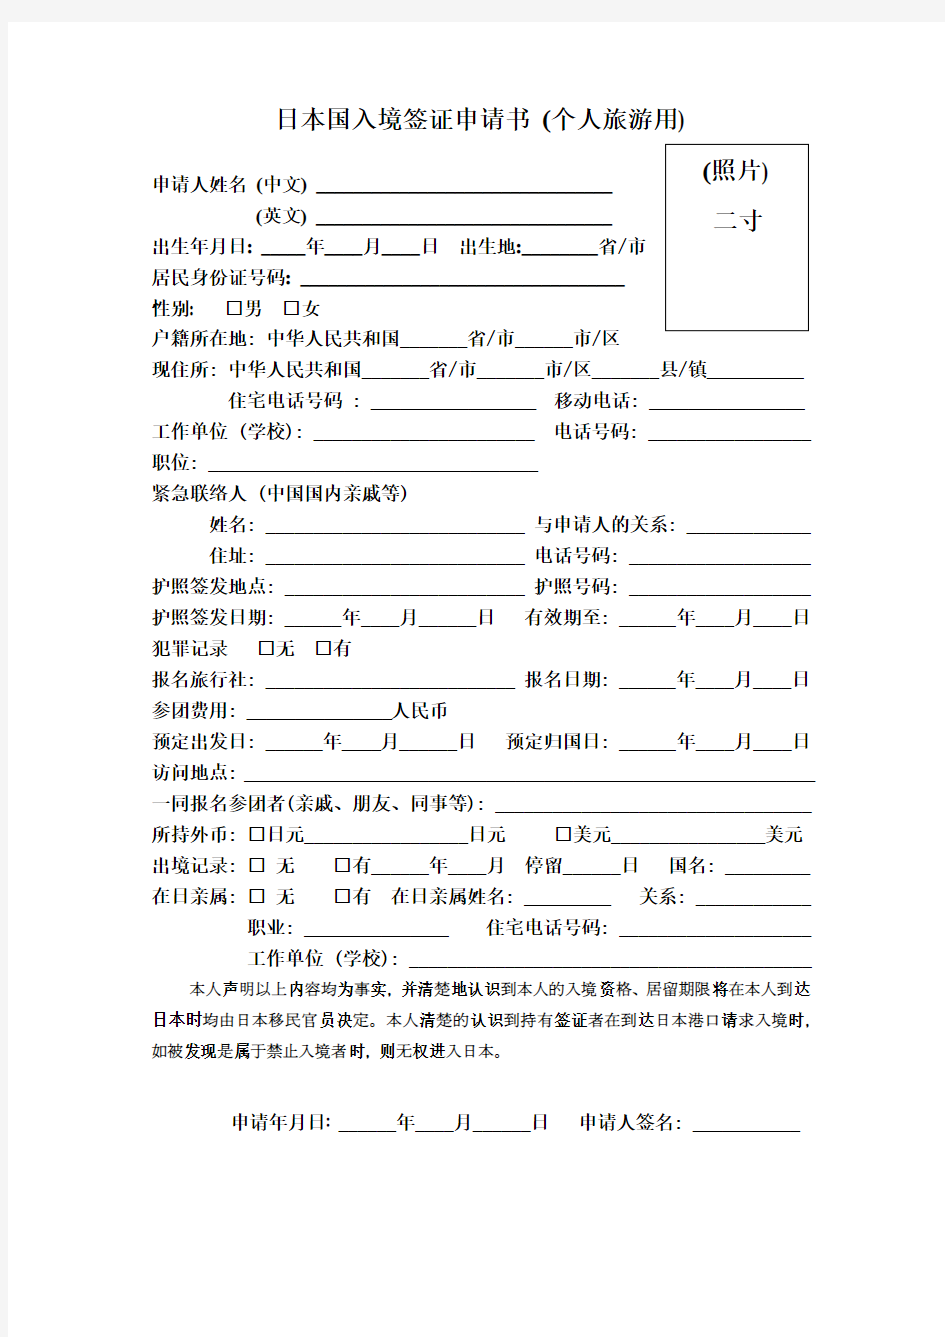 日本国入境签证申请书(个人旅游用)